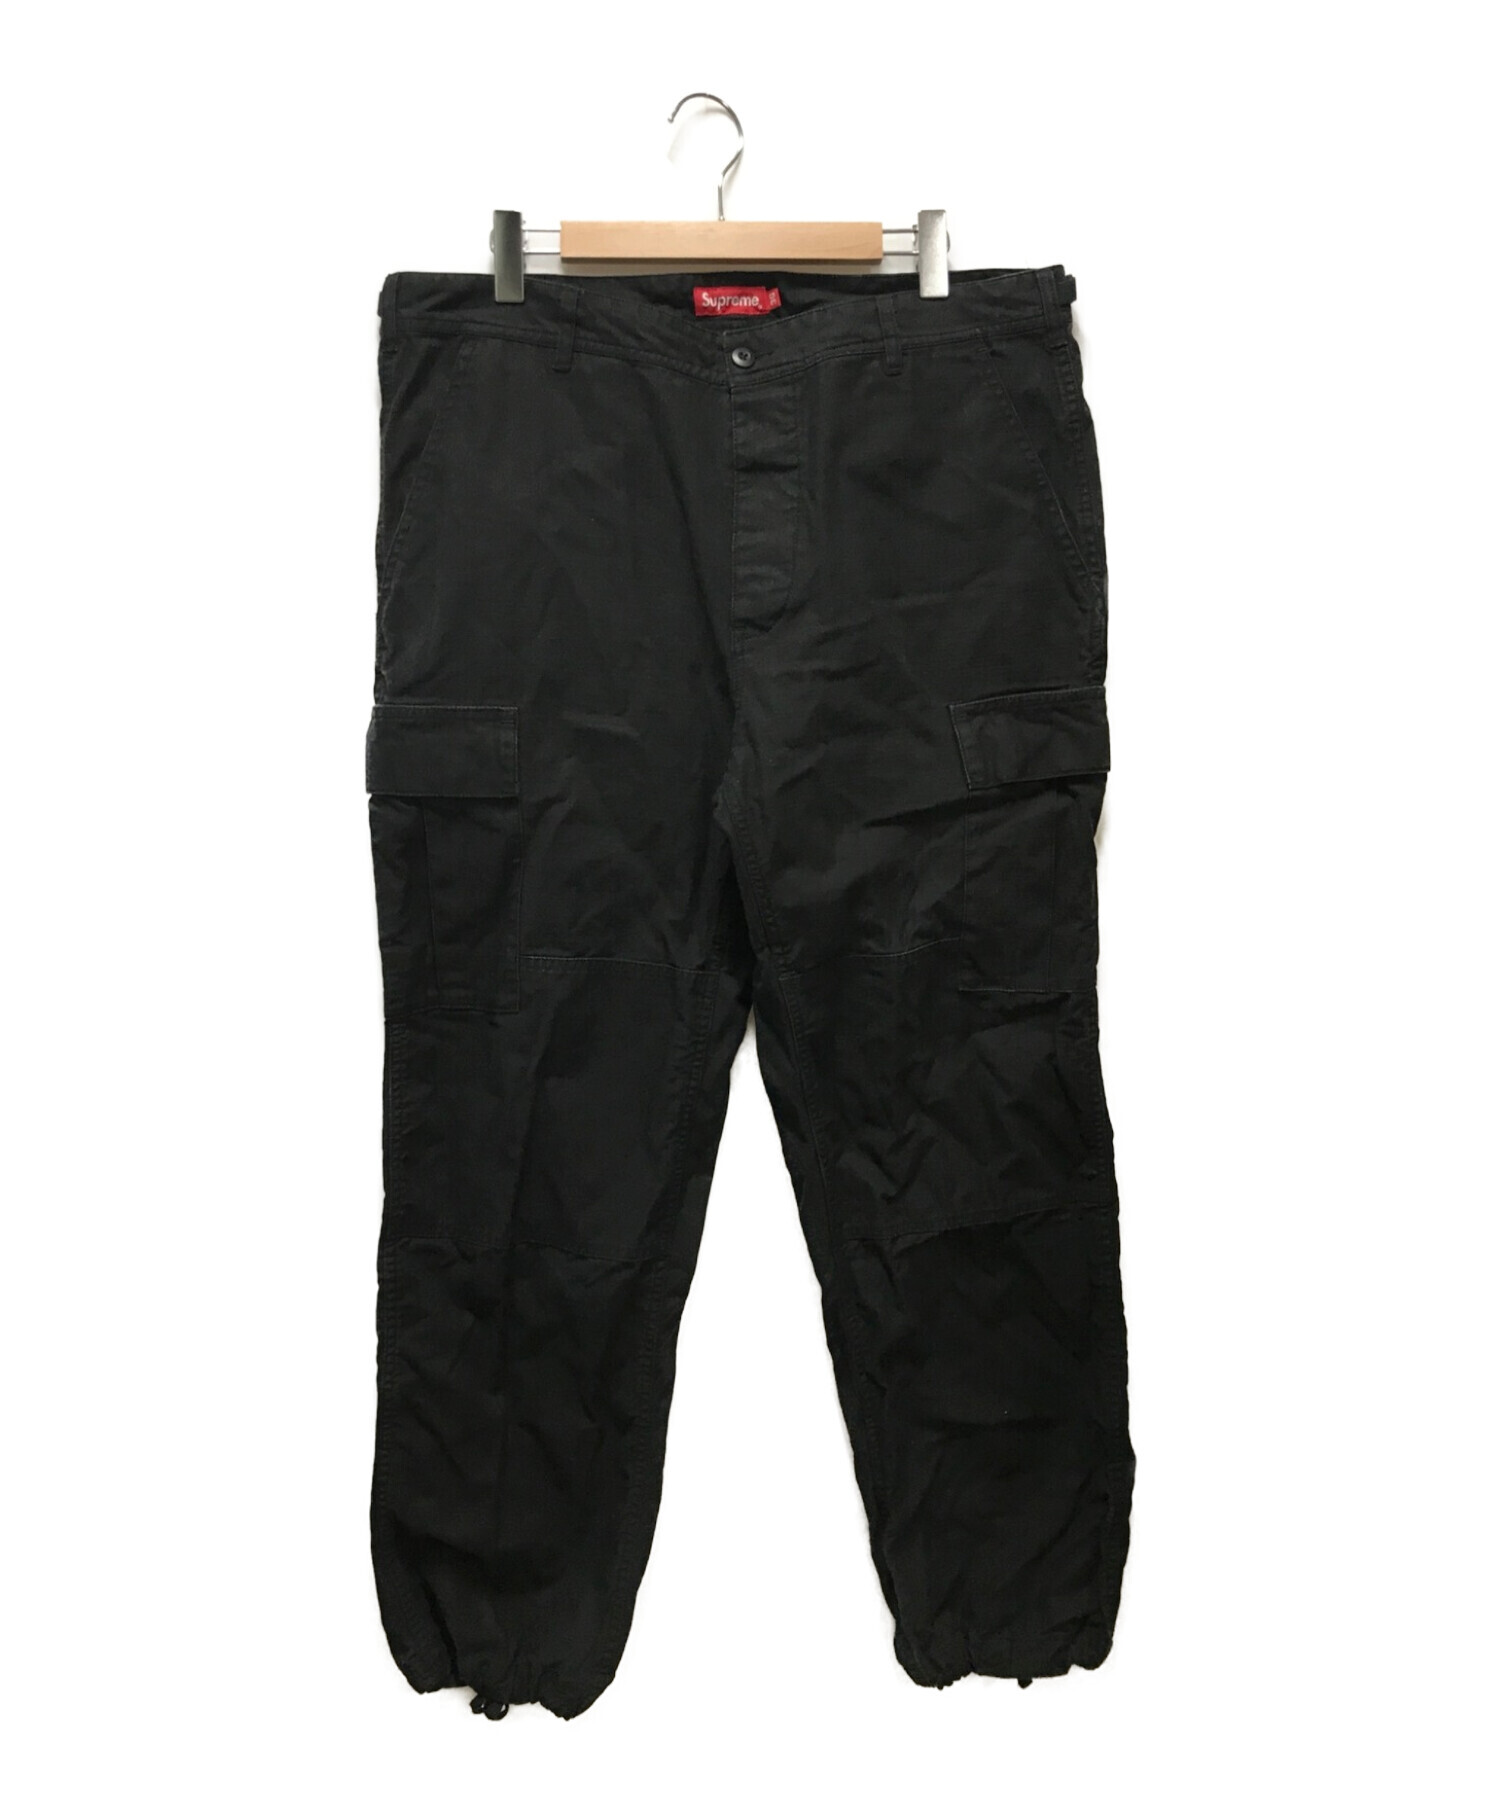 supreme cargo pant black 36 XL